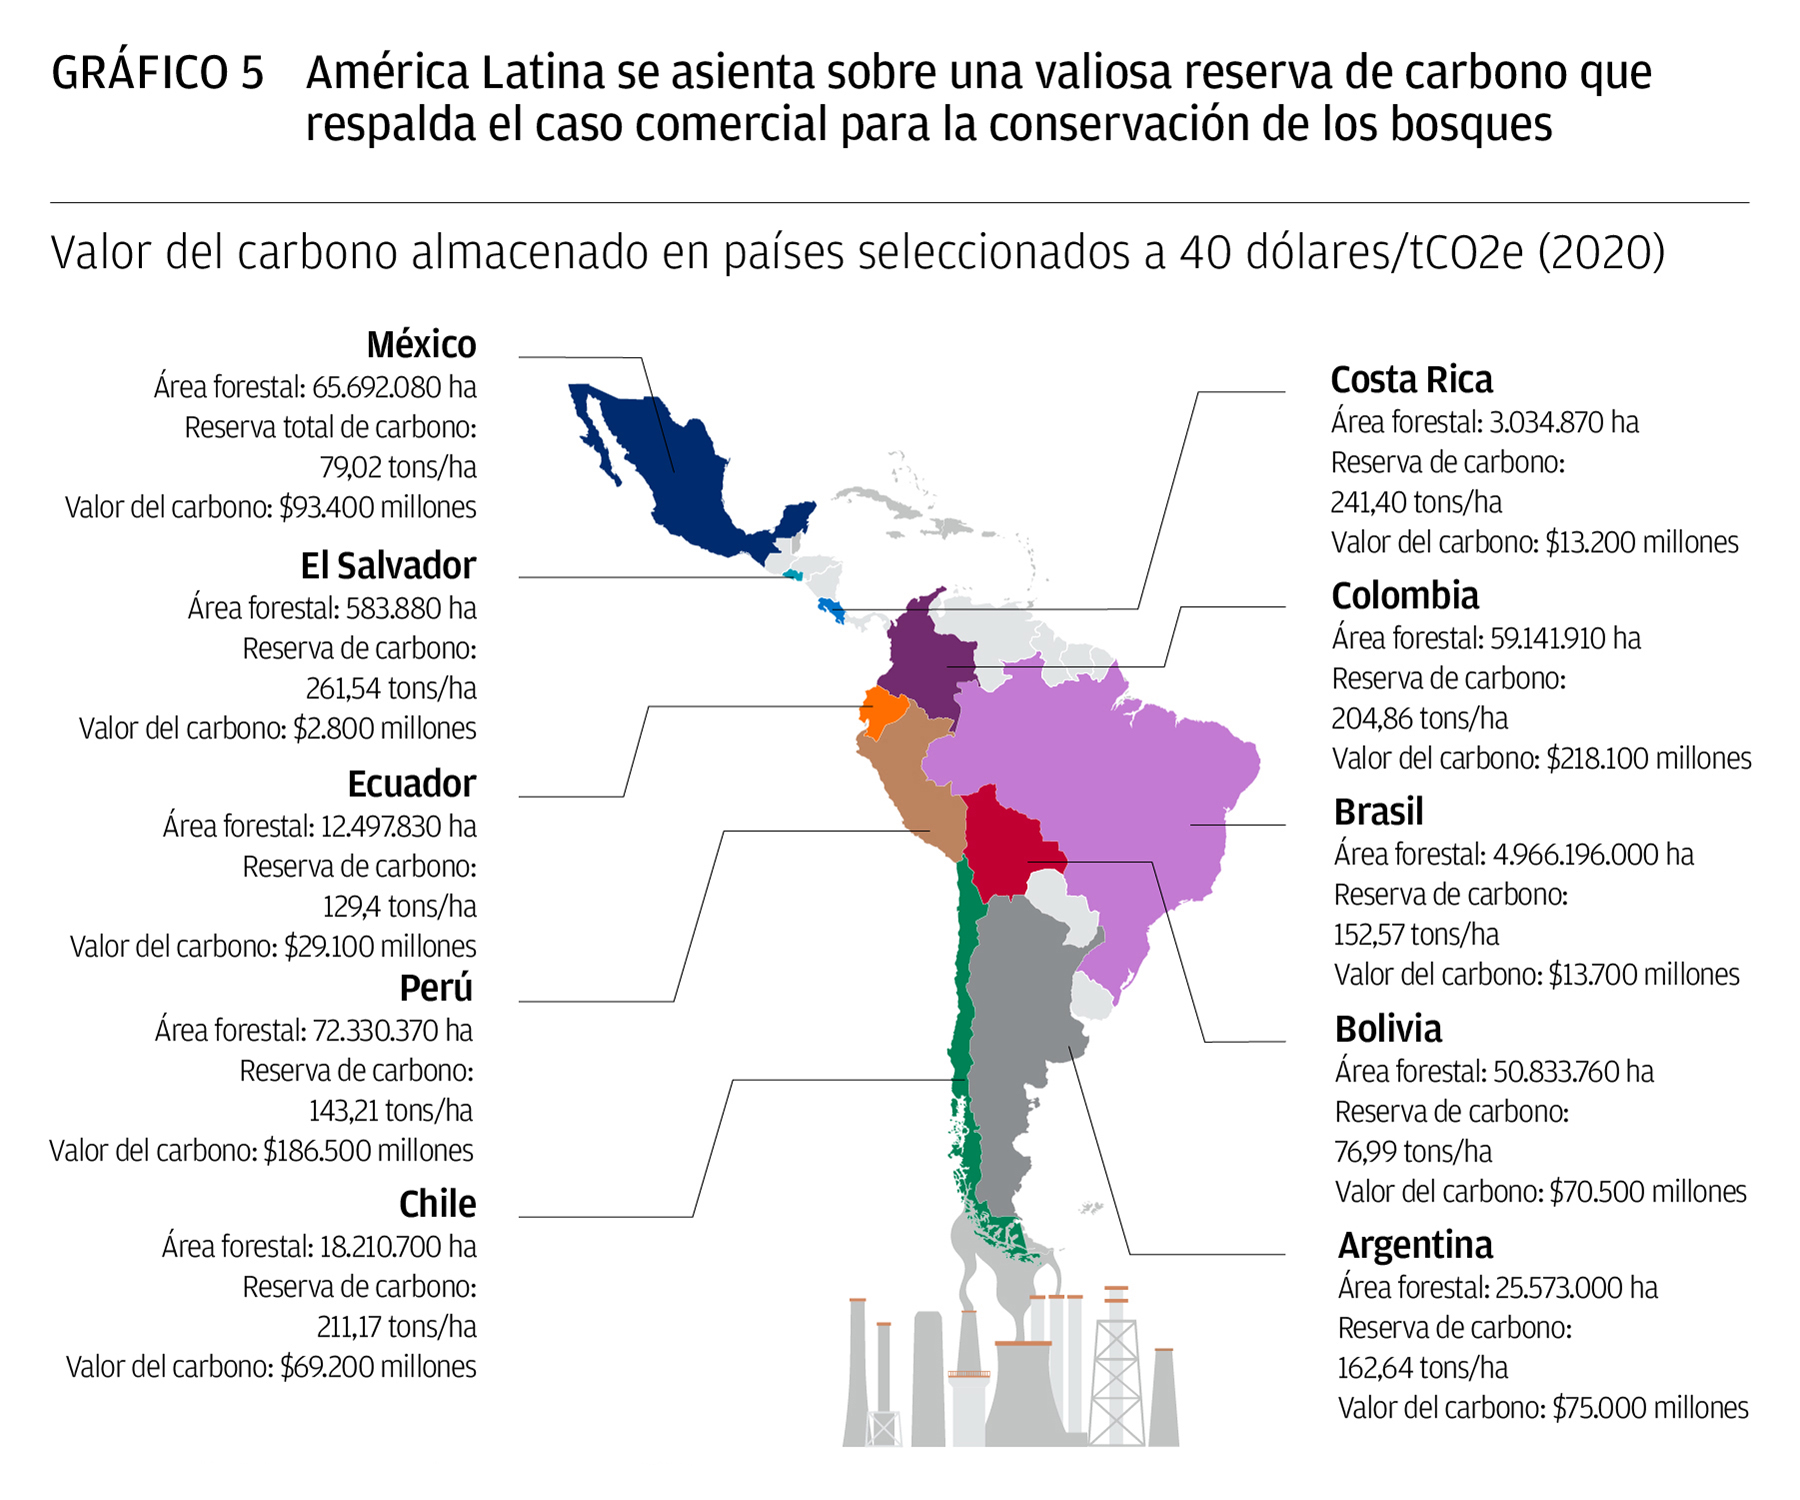 America Latina se asienta sobre una vallosa reserva de carbono que respaida el caso comercial para la conservacion de los bosques